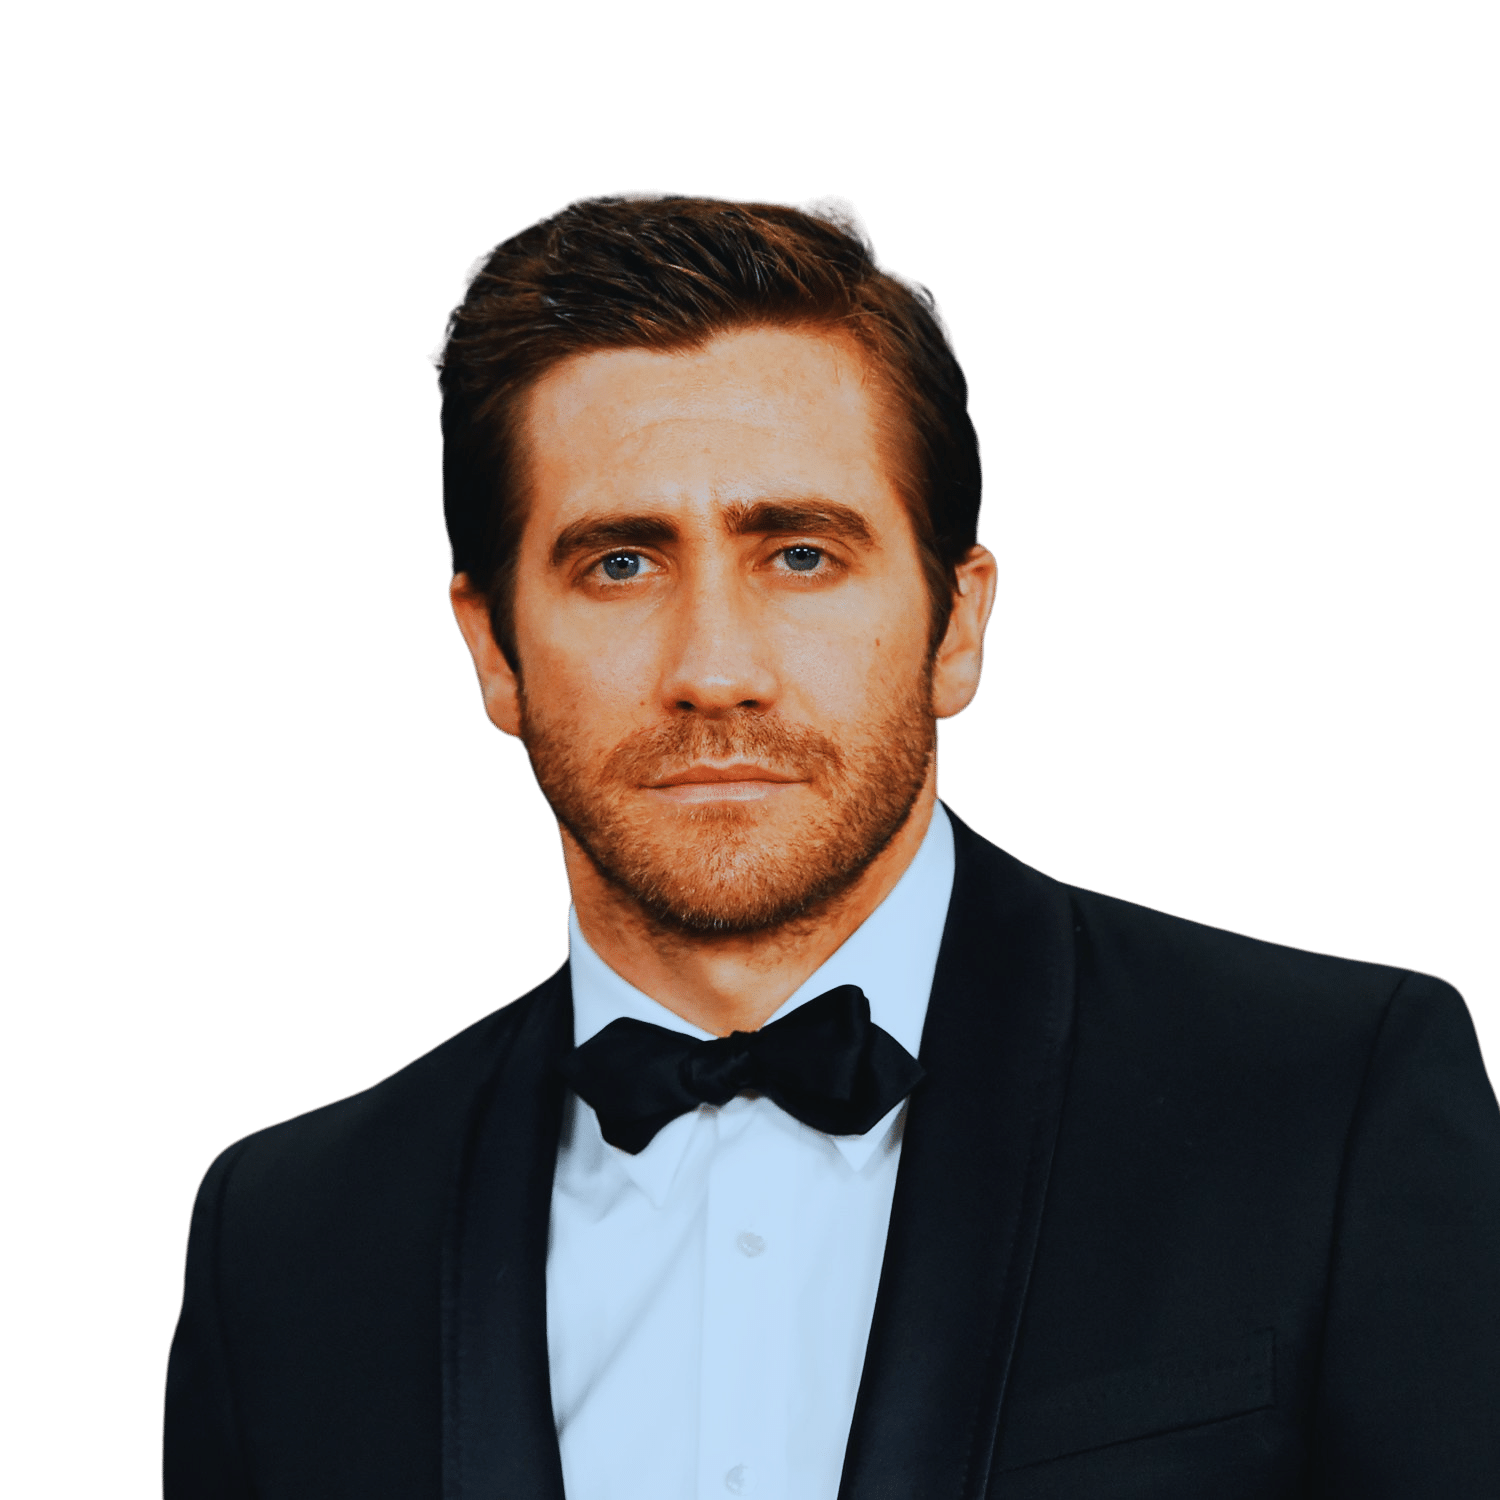 Road House : Jake Gyllenhaal confirme que le film était destiné dès le départ au streaming			
